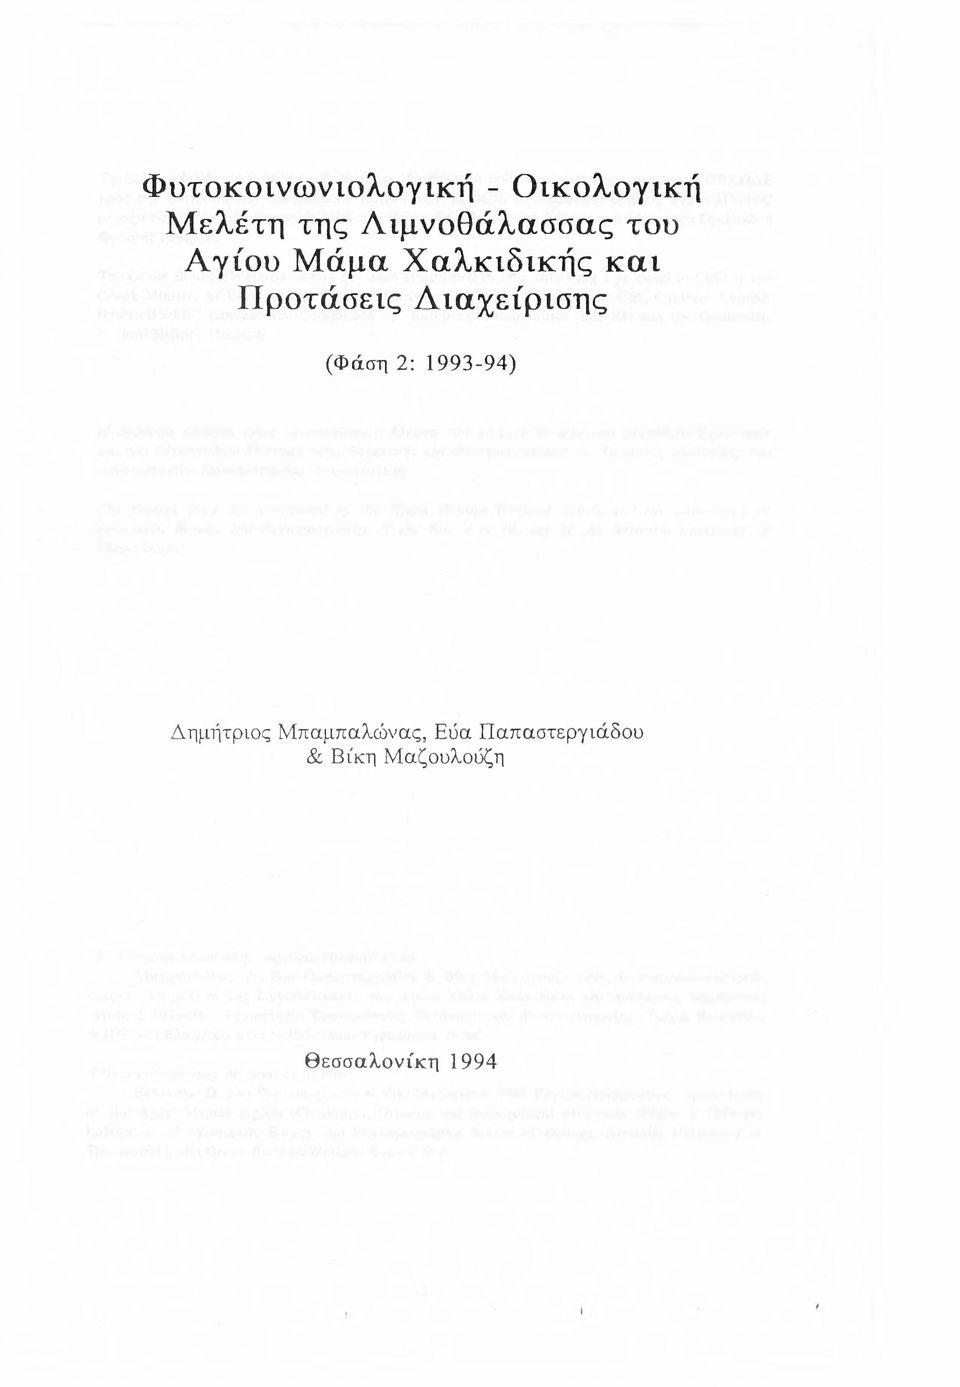 Προτάσεις Διαχείρισης (Φάση 2: 1993-94) Δημήτριος